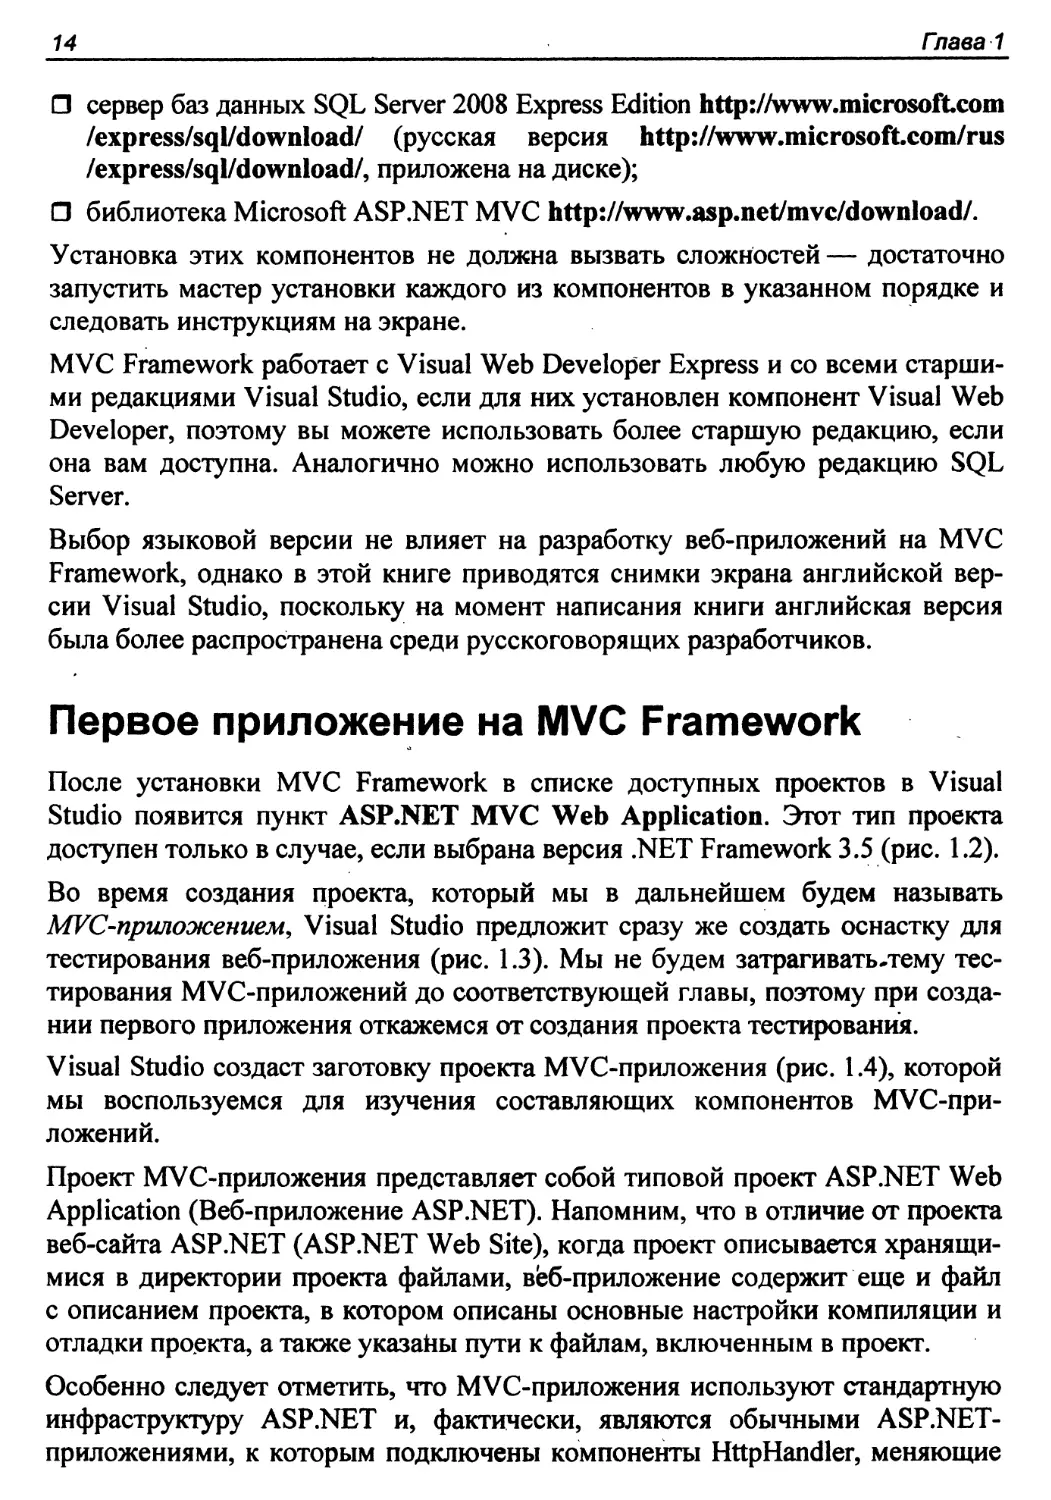 Первое приложение на MVC Framework